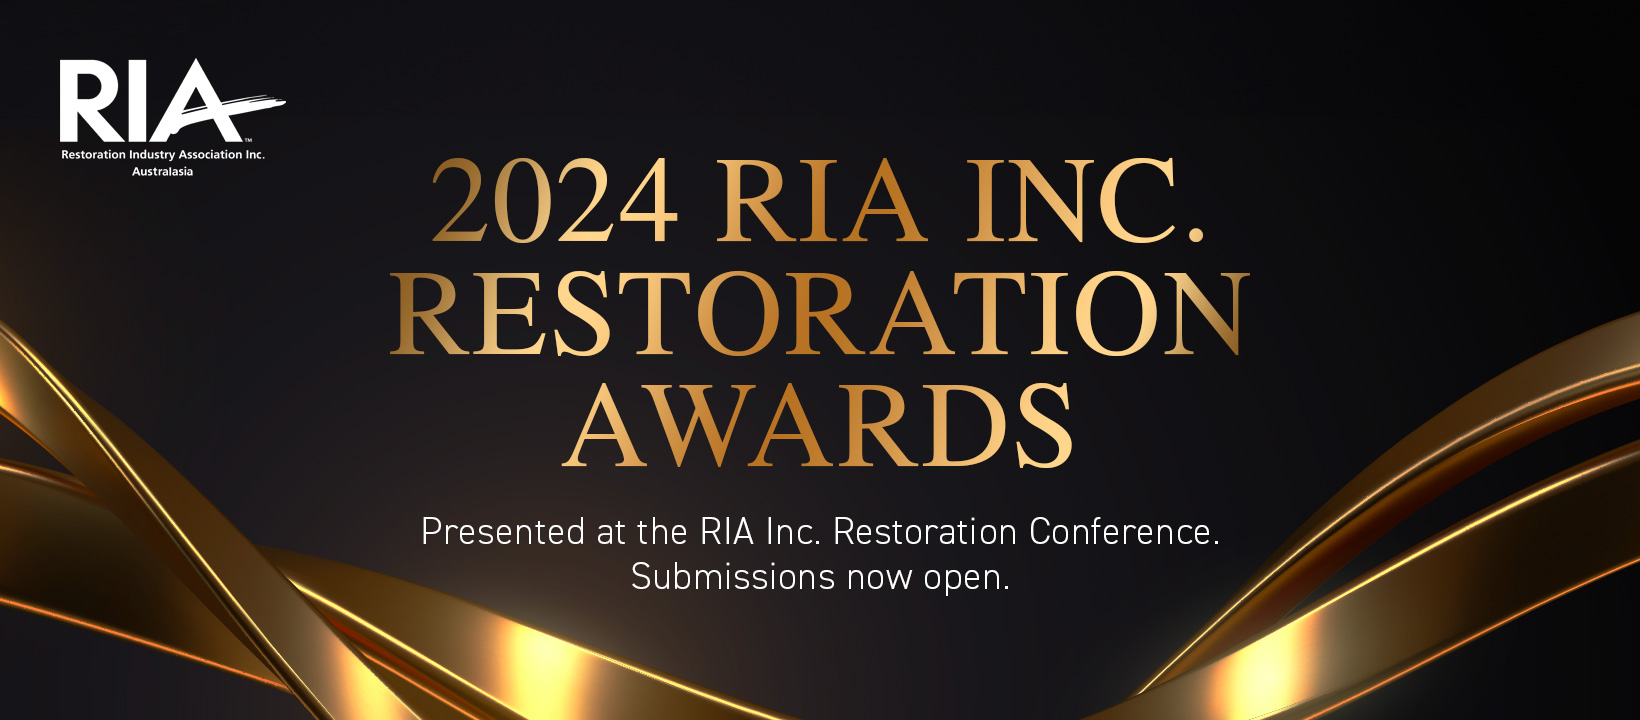 Restoration Awards Restoration Industry Association Inc. (Australasia)